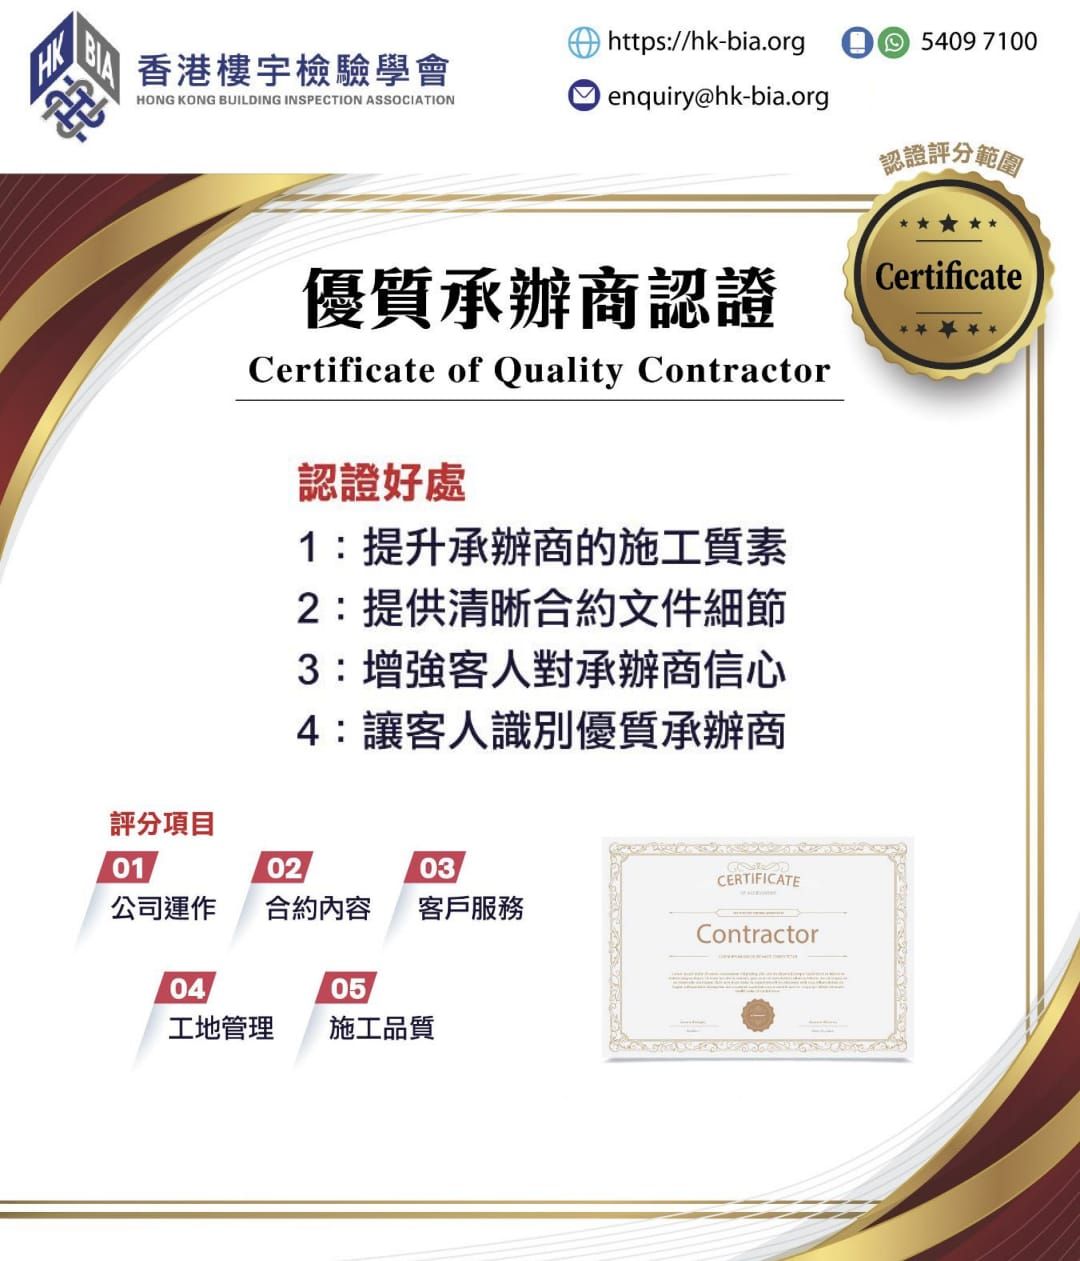 《優質承辦商認證》Certificate of Quality Contractor